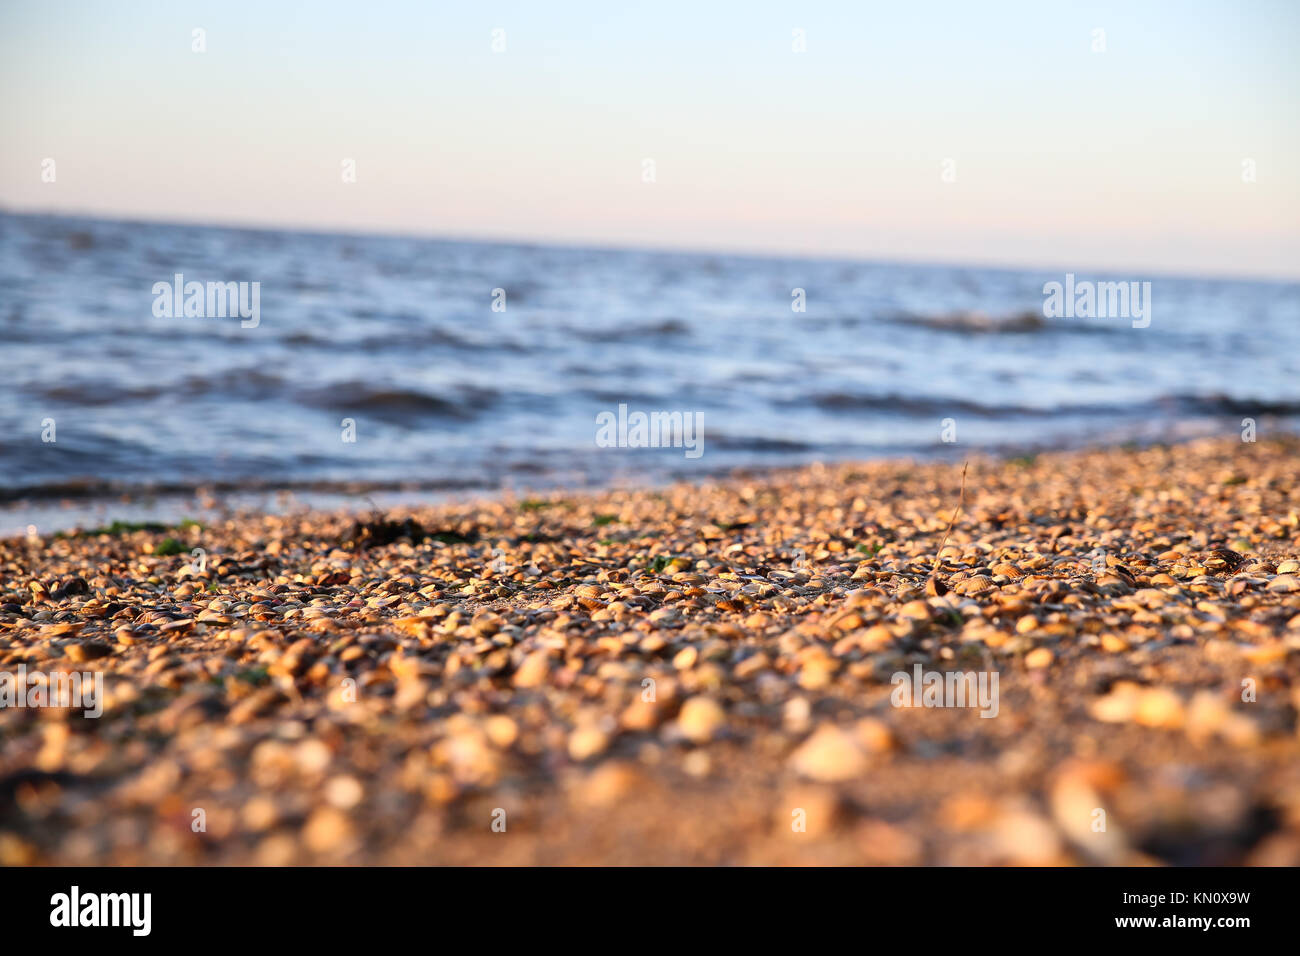 beach with many shells Stock Photo